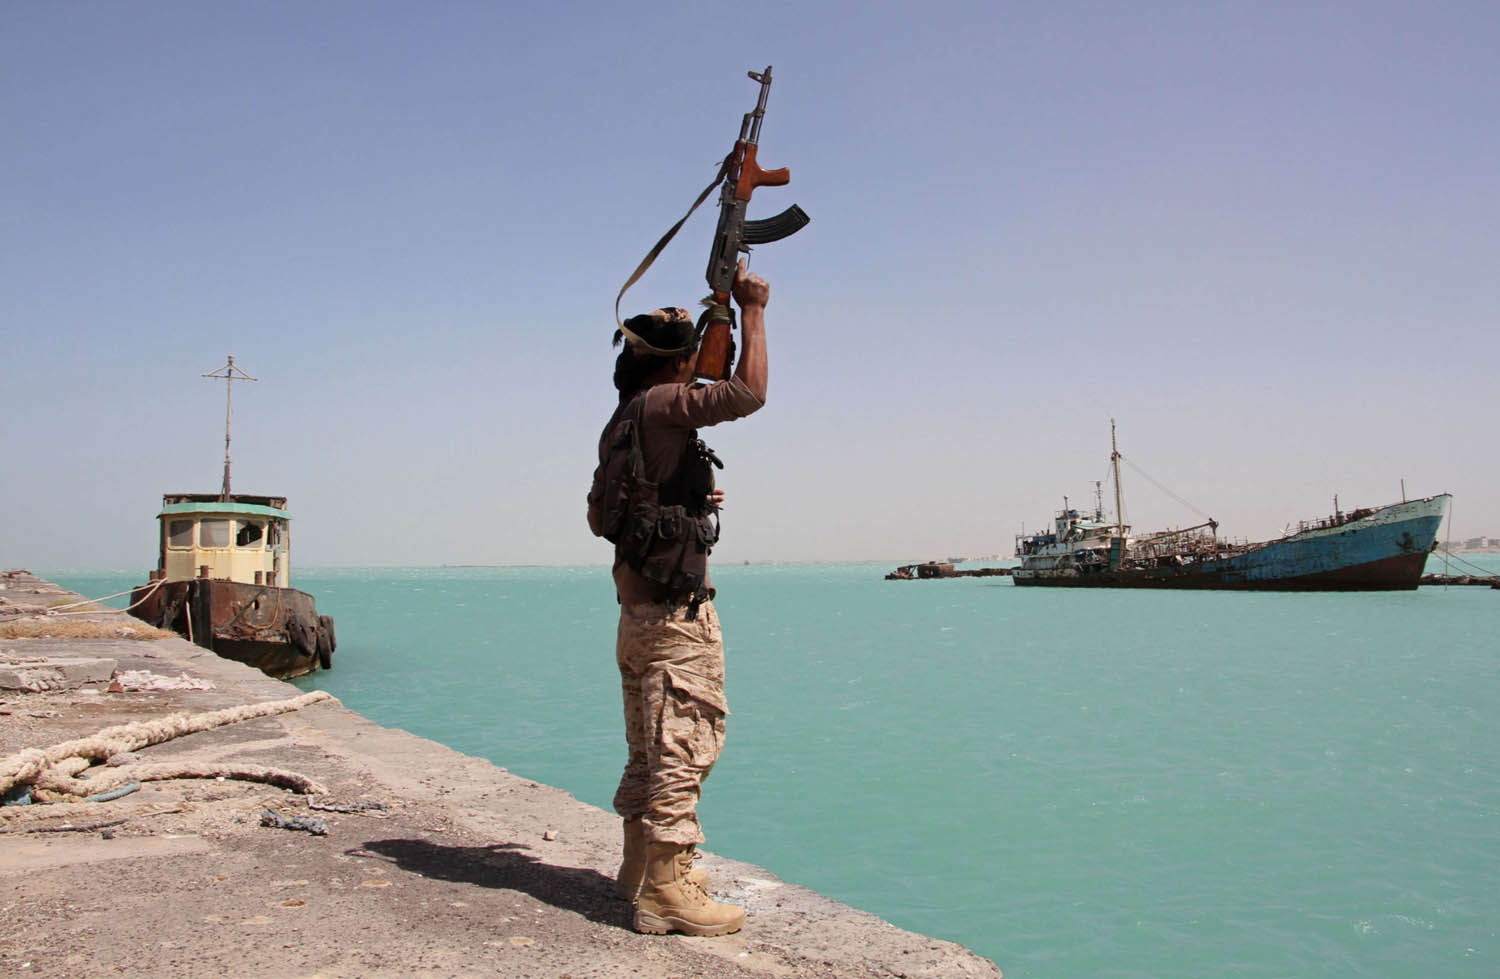 محاولة الحوثيين استهداف الميناء بزورق مفخخ فشلت فلجأوا إلى الطائرات المسيرة